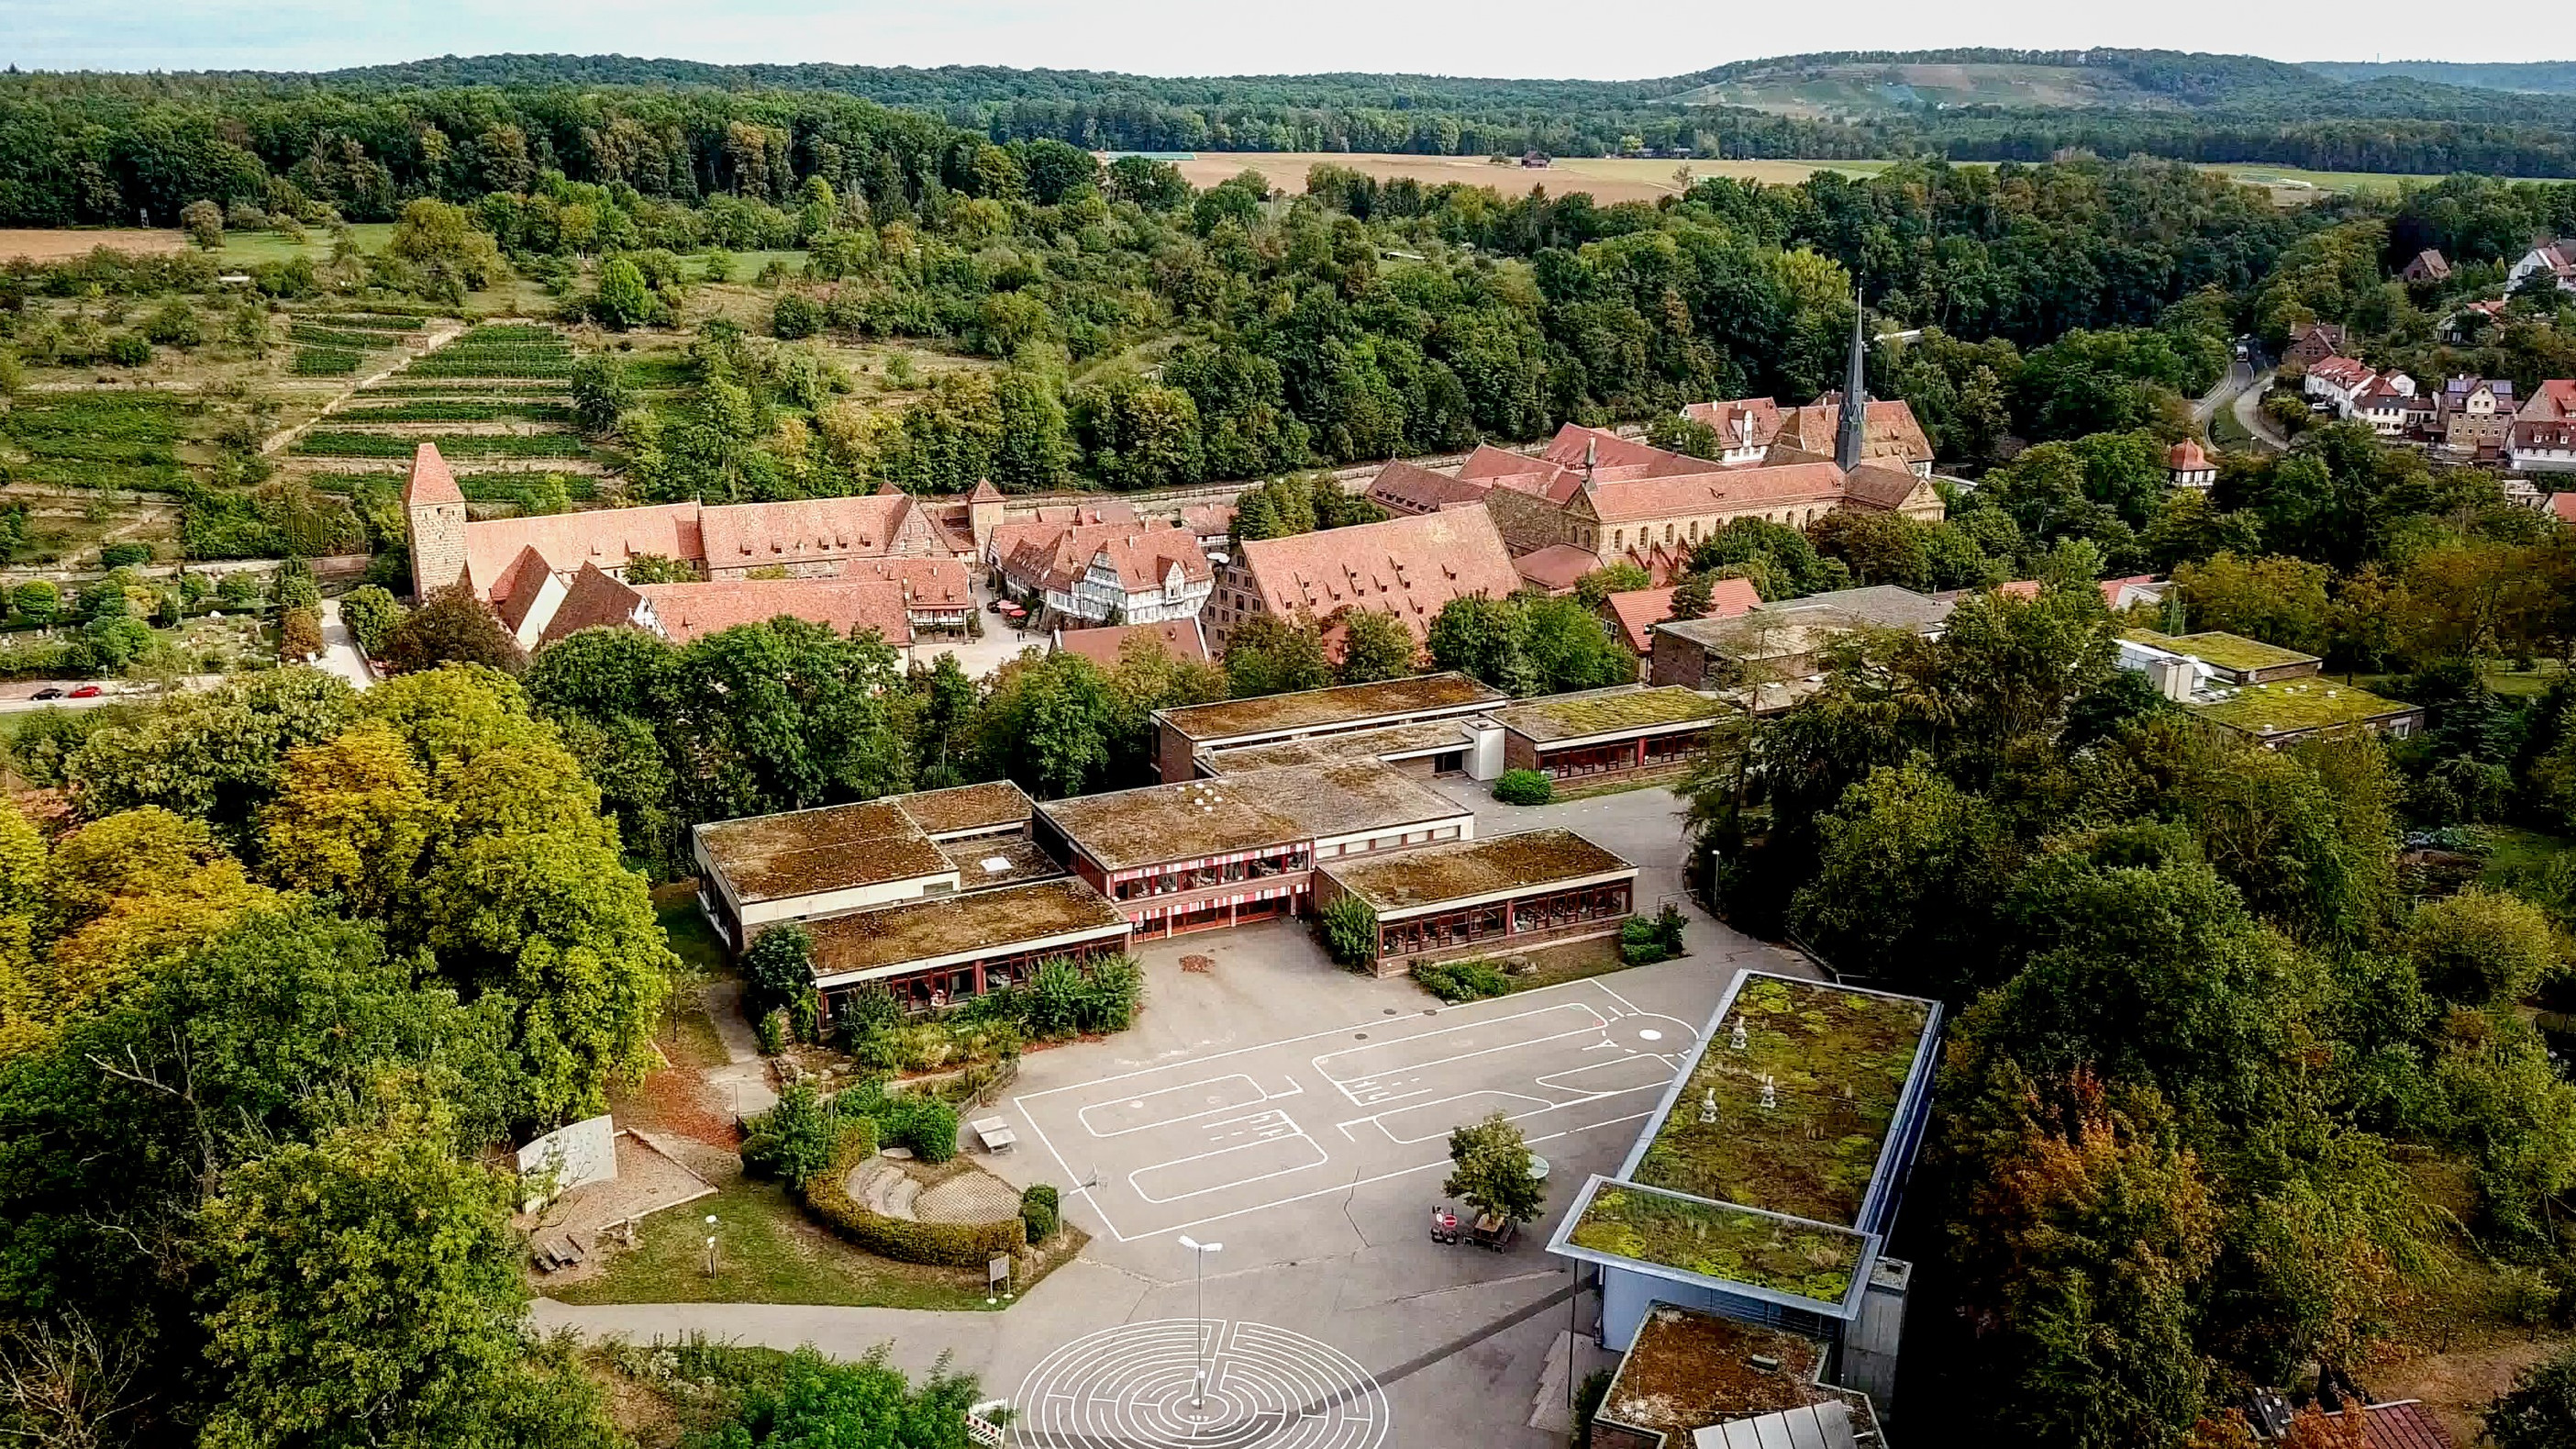 Blick auf ein Ensemble von Schulgebäuden aus Sandstein, den Schulhof und Bäume, im Hintergrund das Kloster